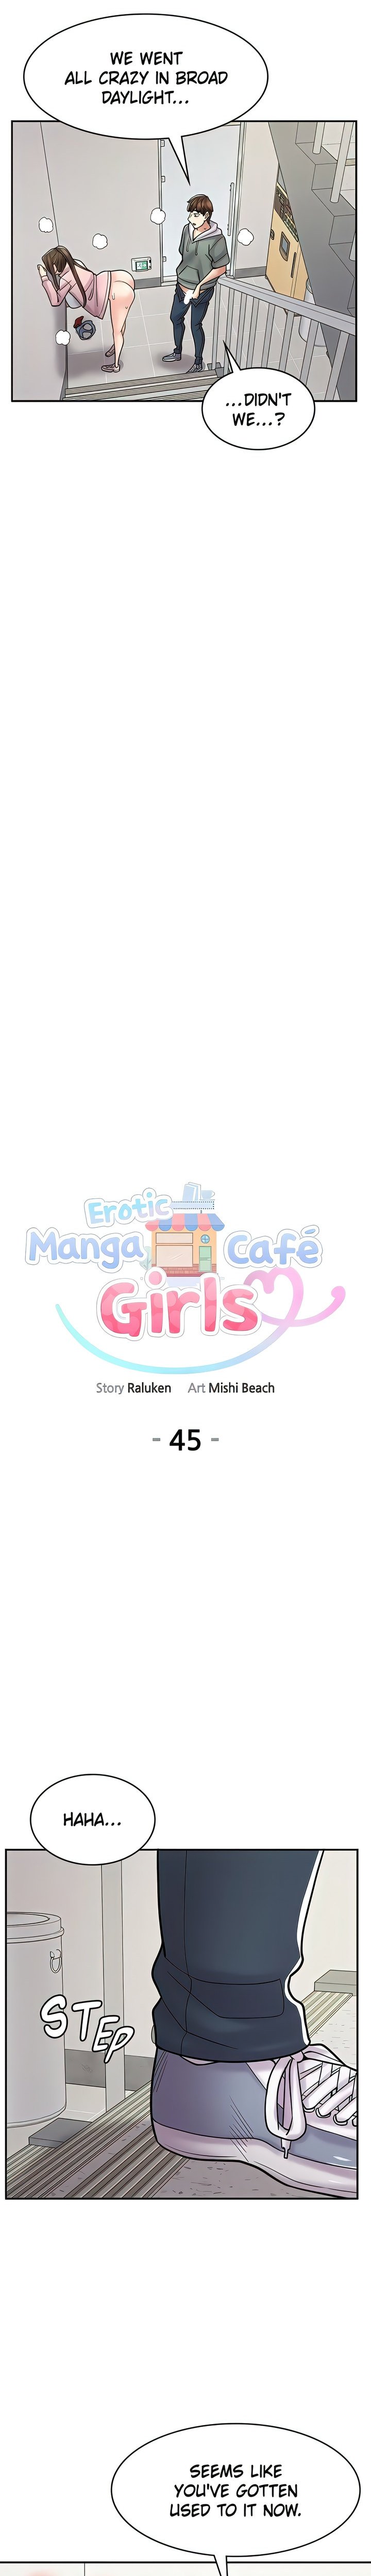 erotic-manga-cafe-girls-chap-45-10